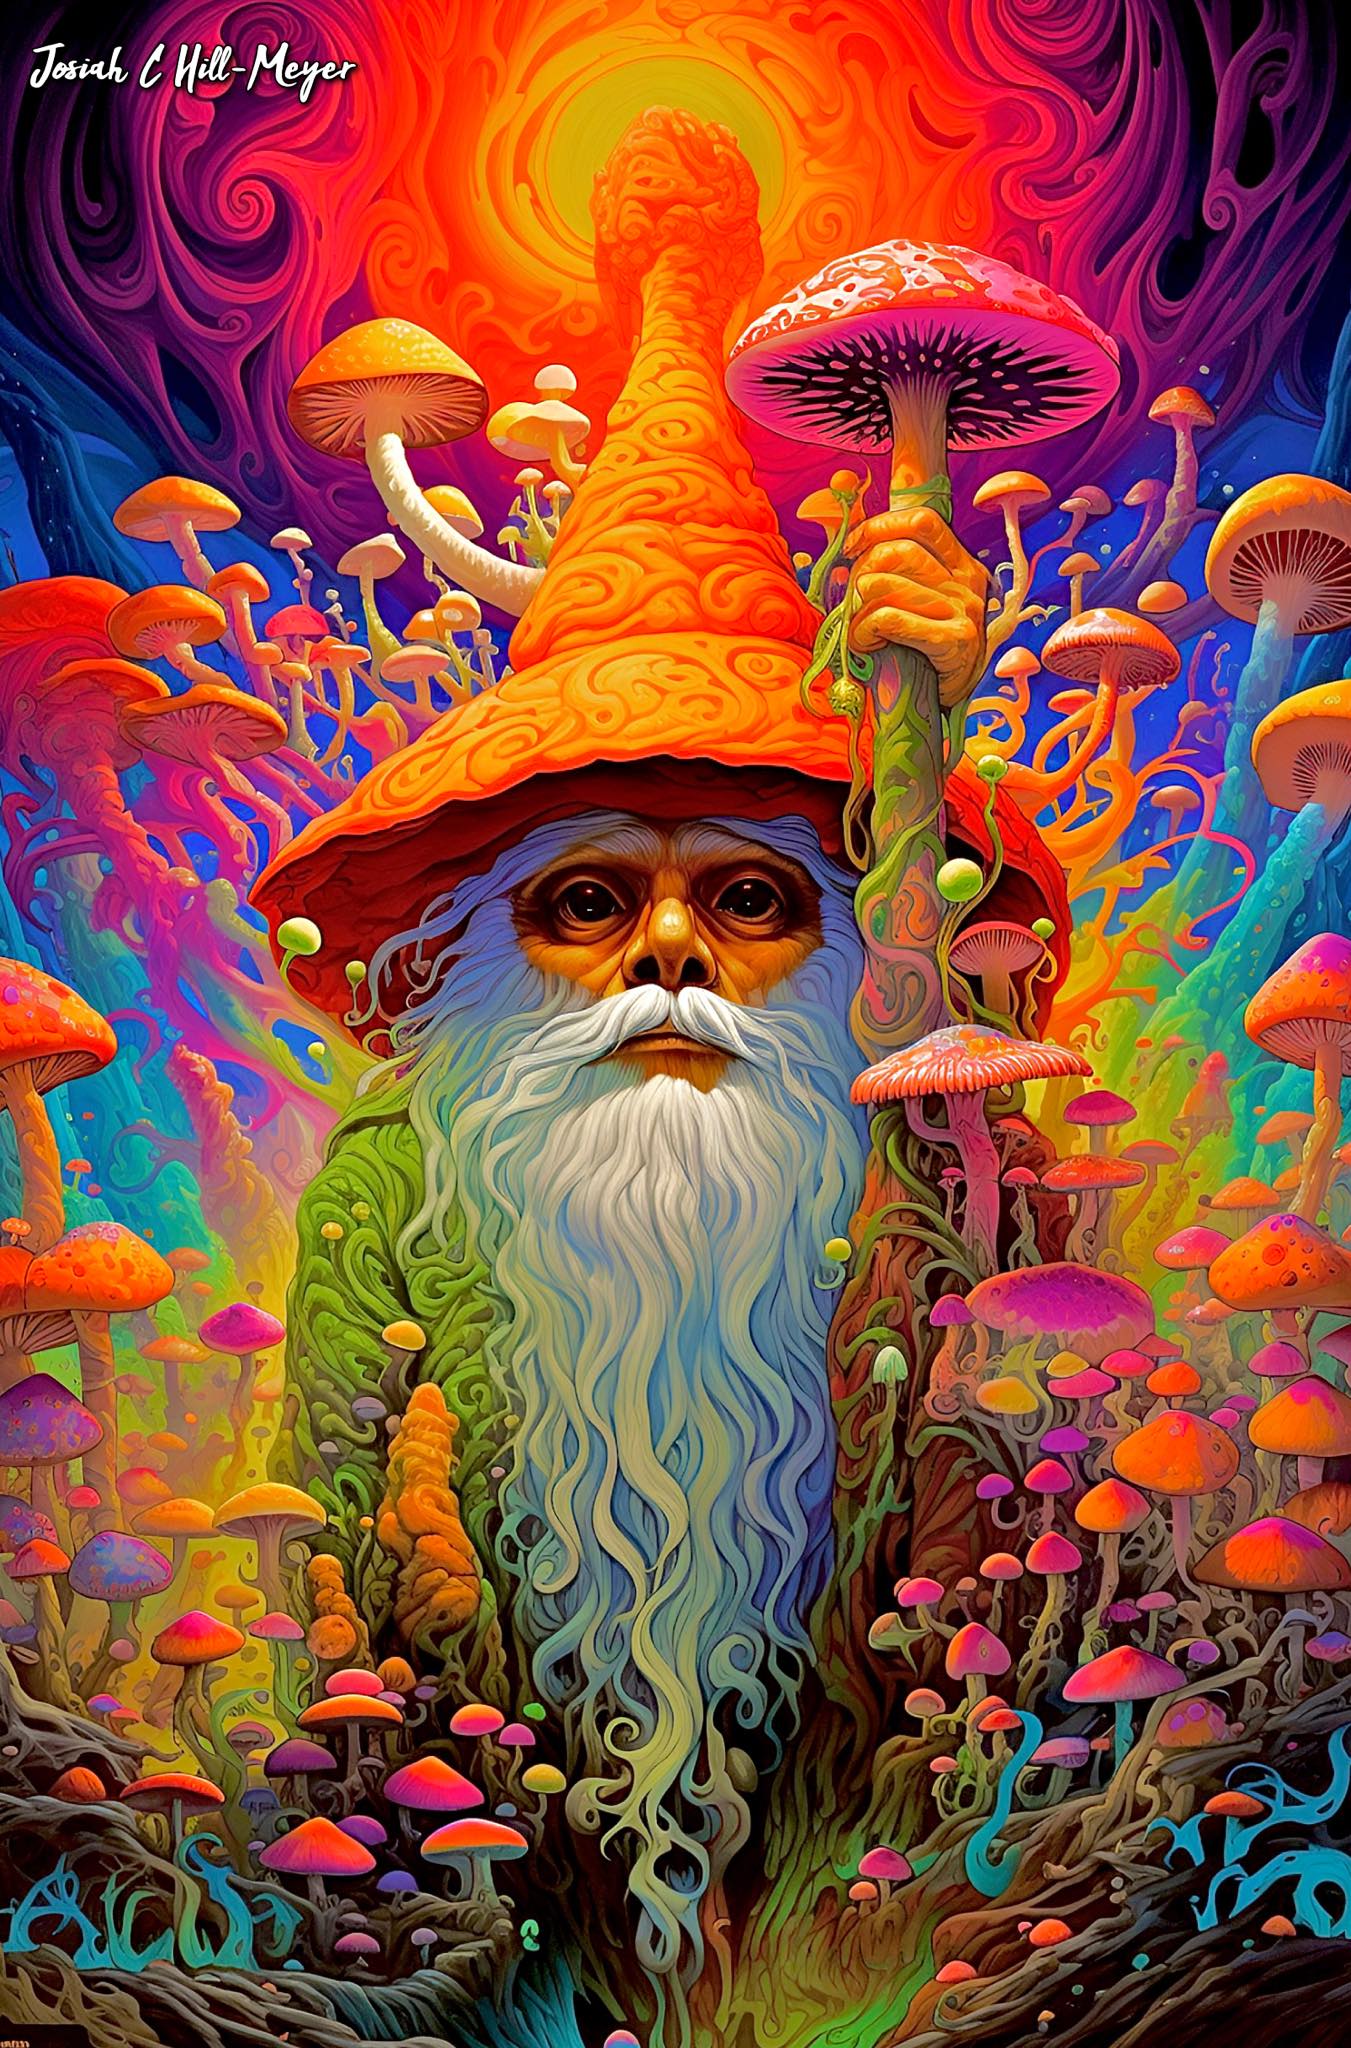 Mushroom Wizard